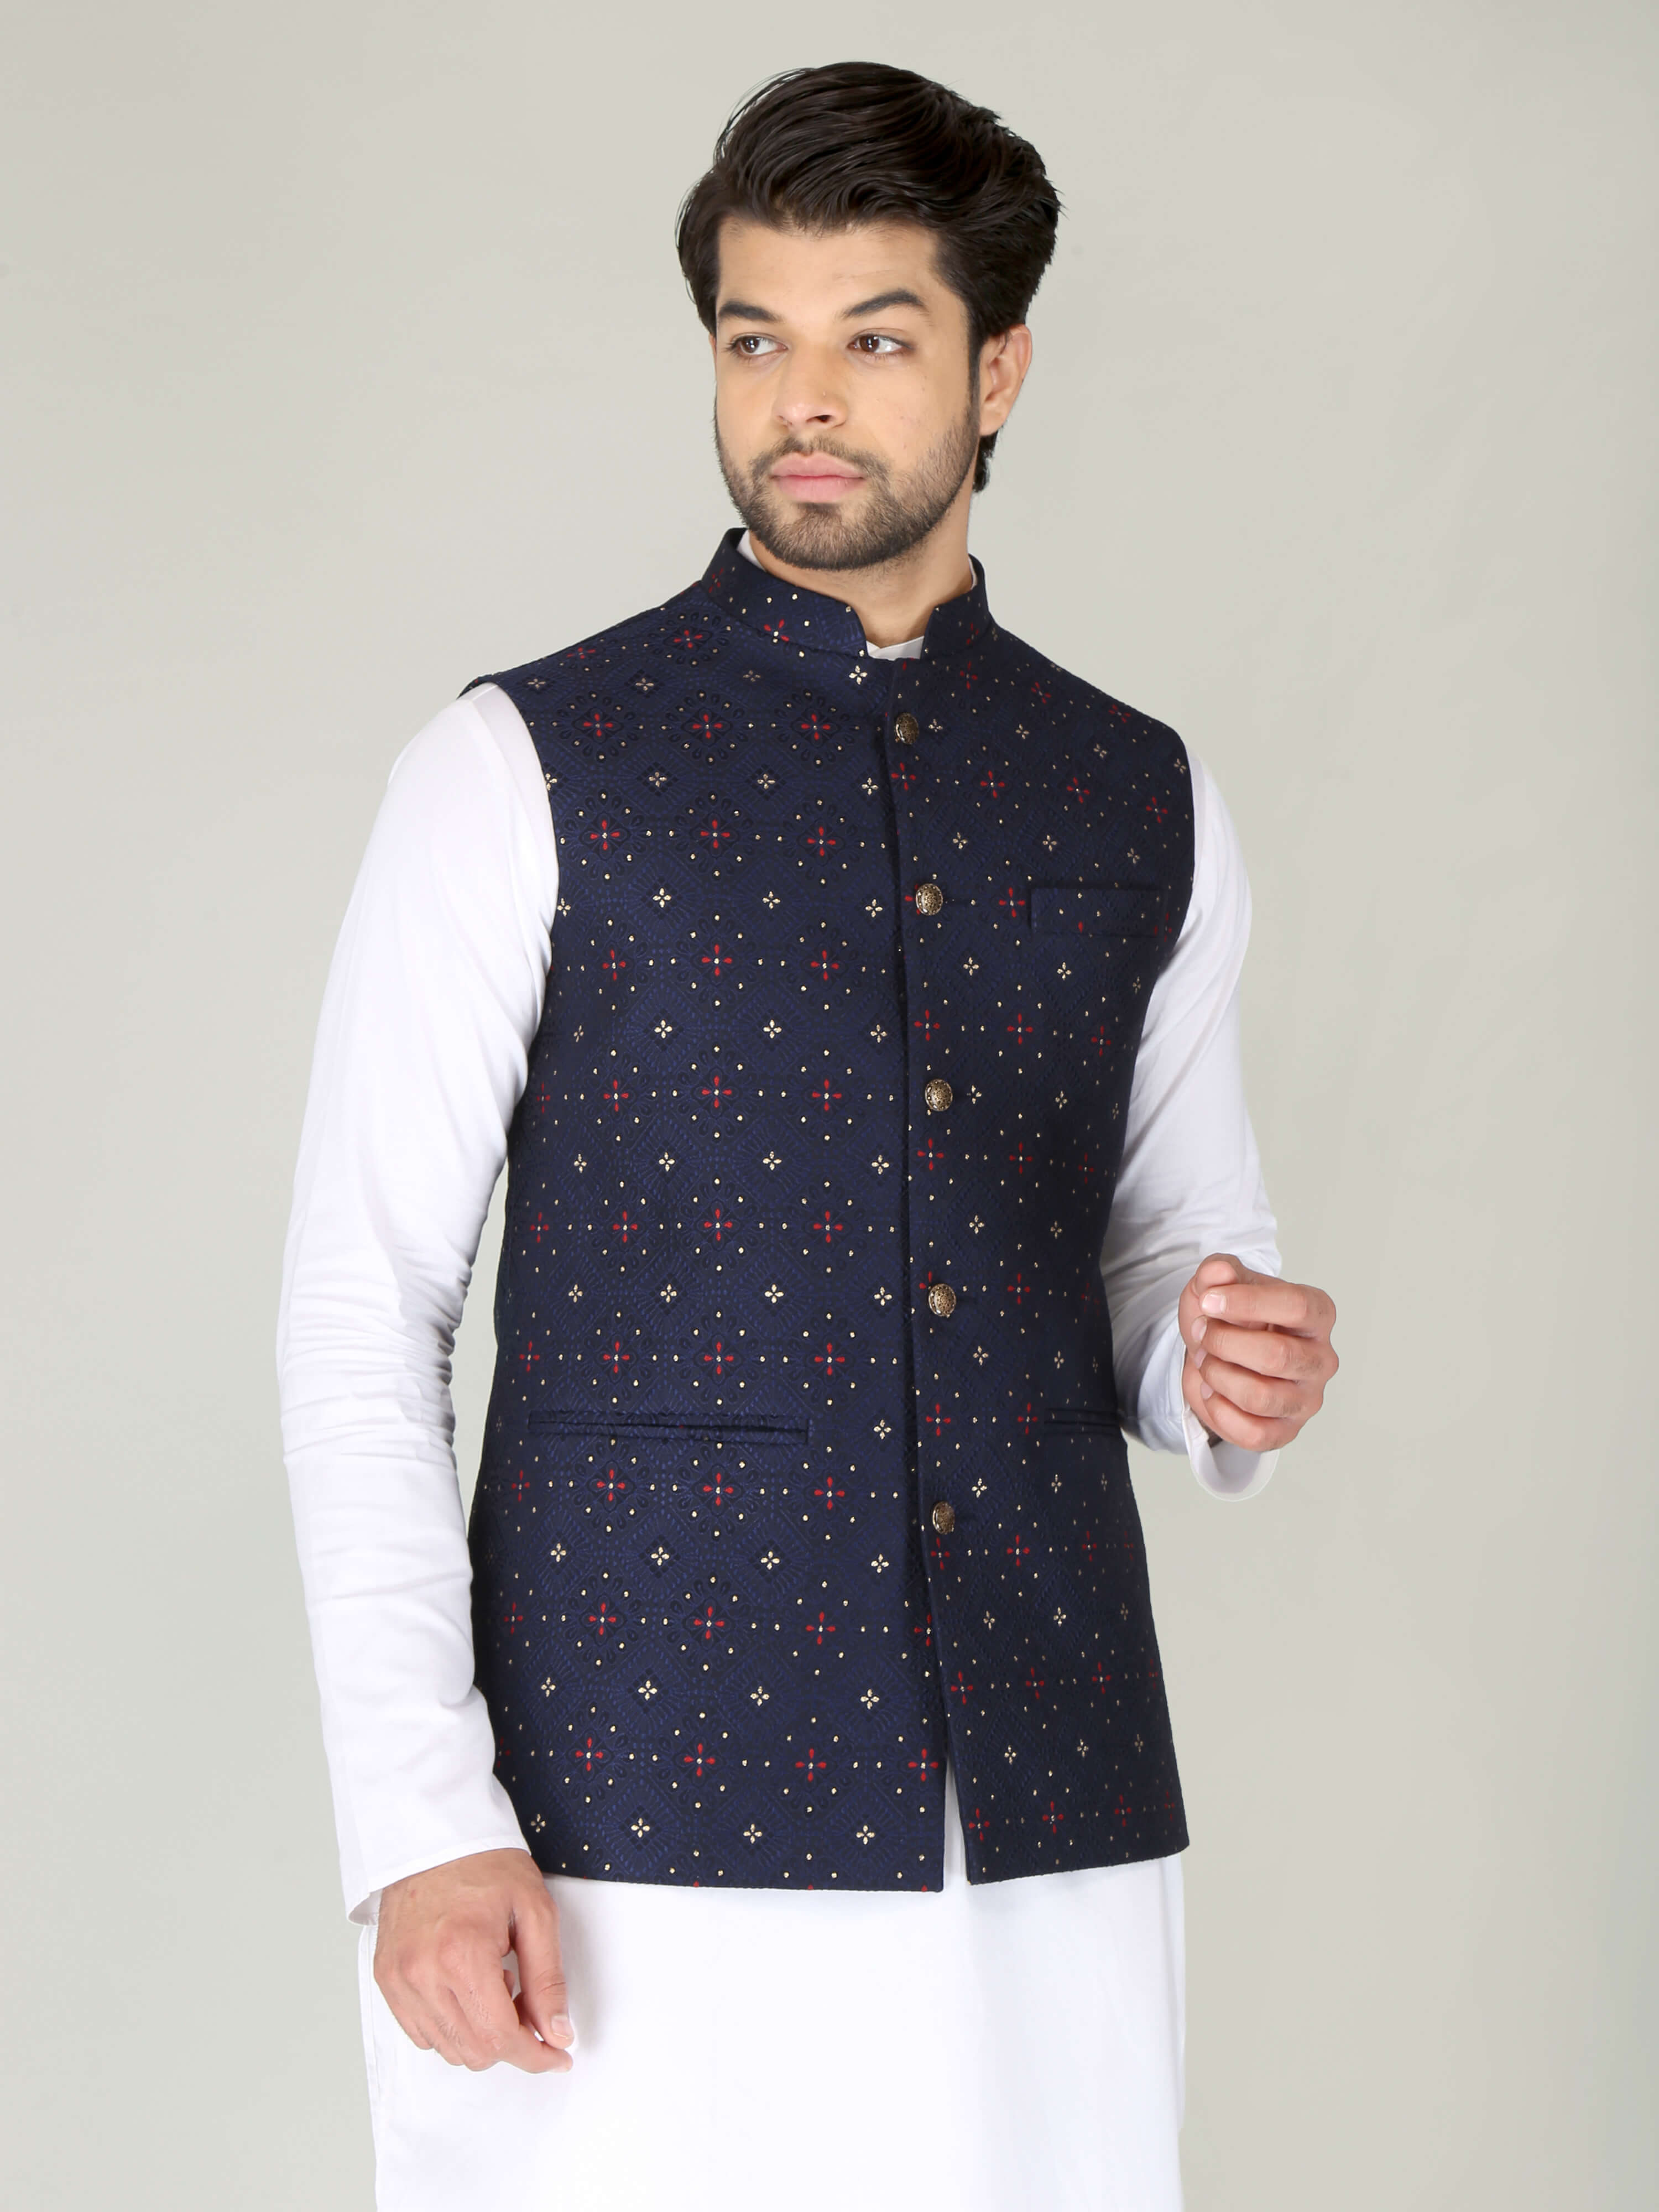 nehru jacket bandi for men indian ethnic jacket wedding jacket party jacket  men | eBay